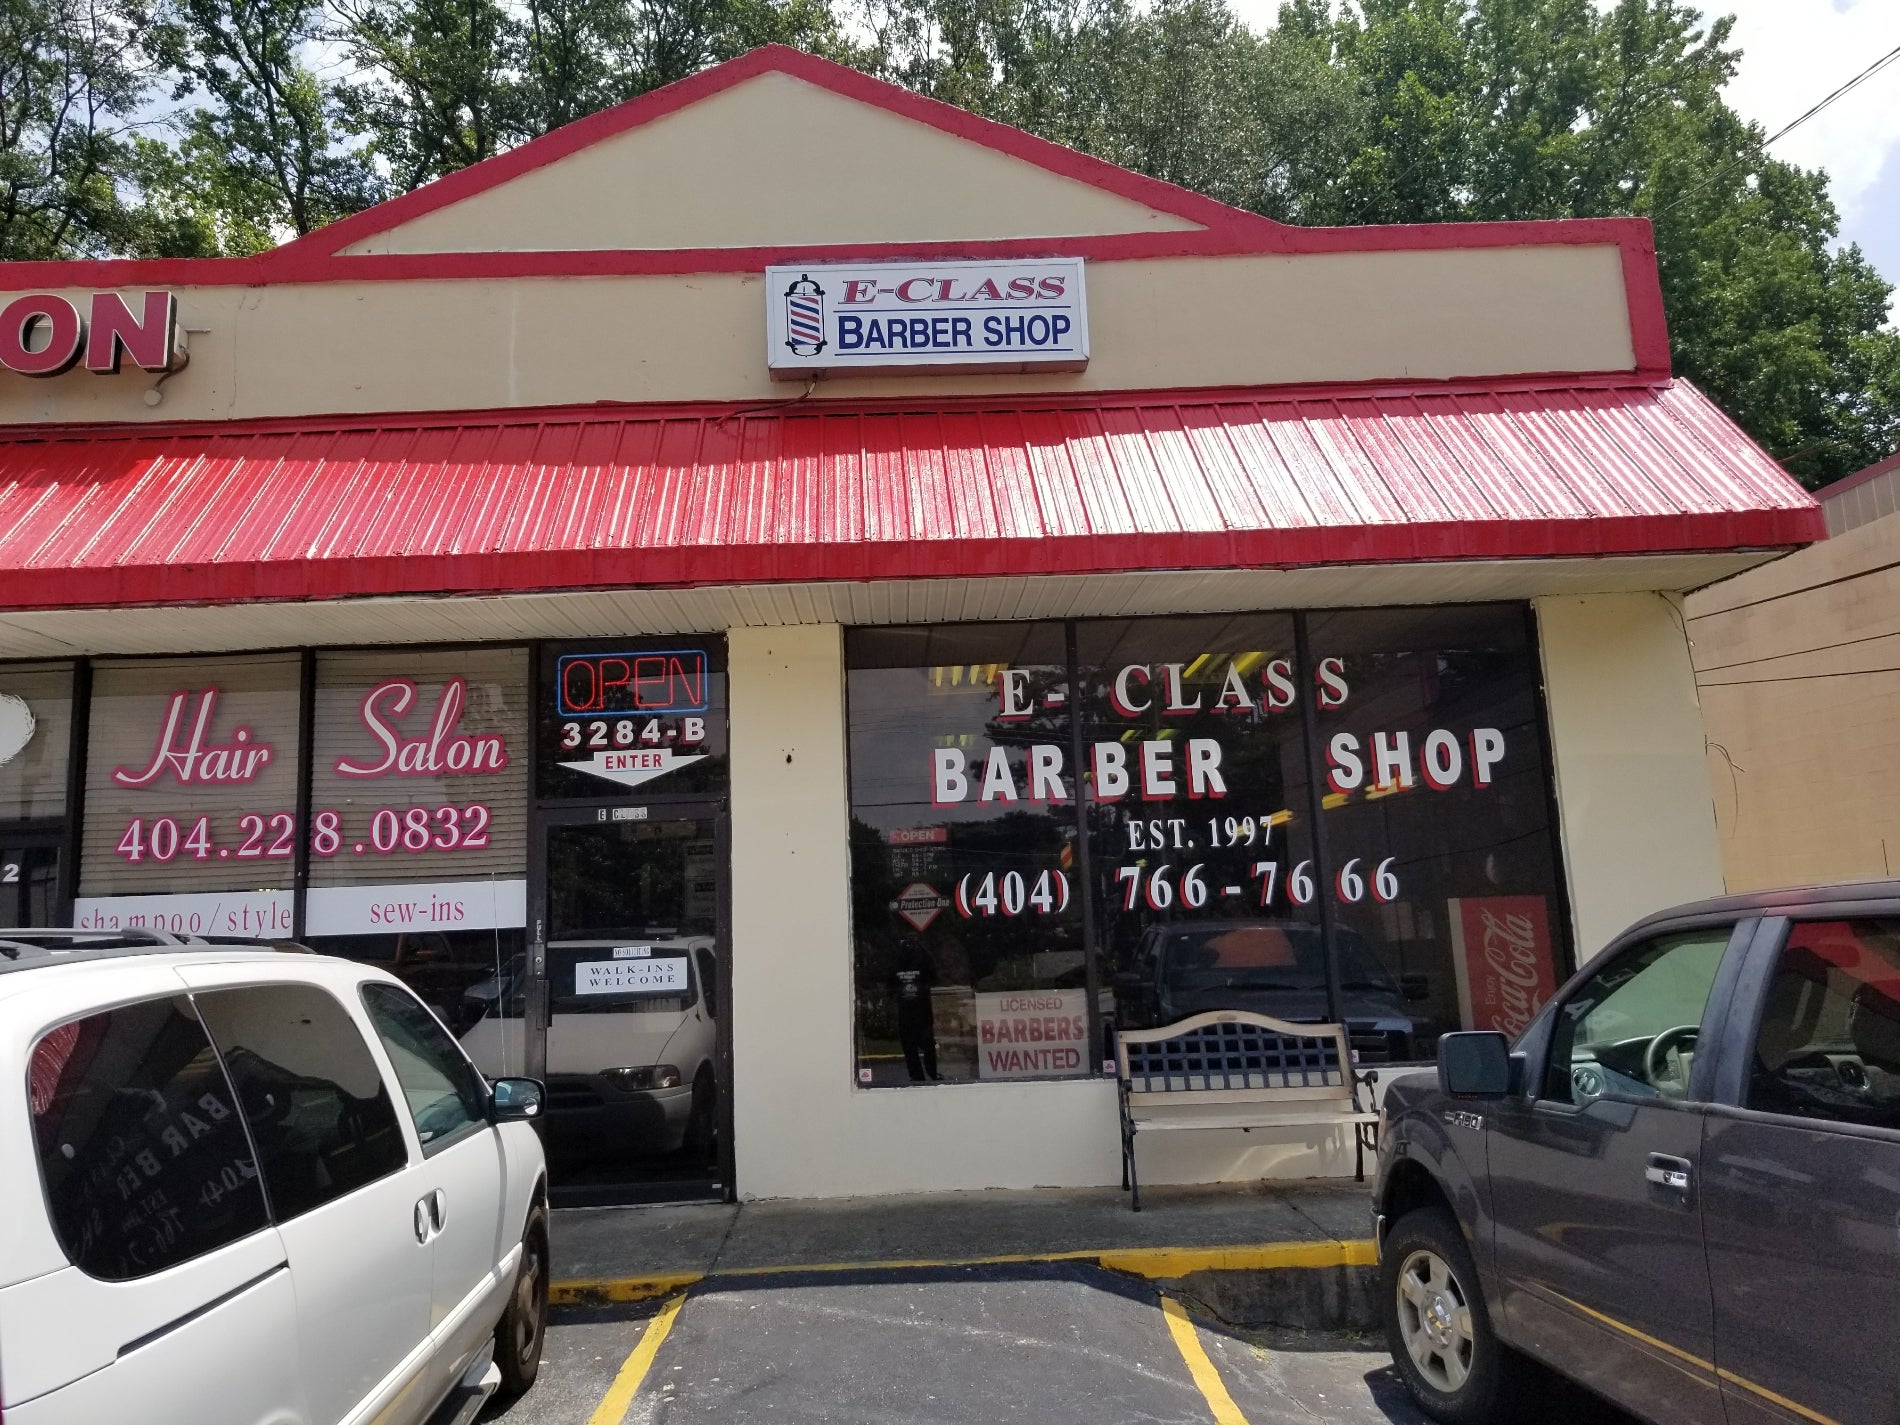 E-Class Barber Shop - Atlanta, GA 30344